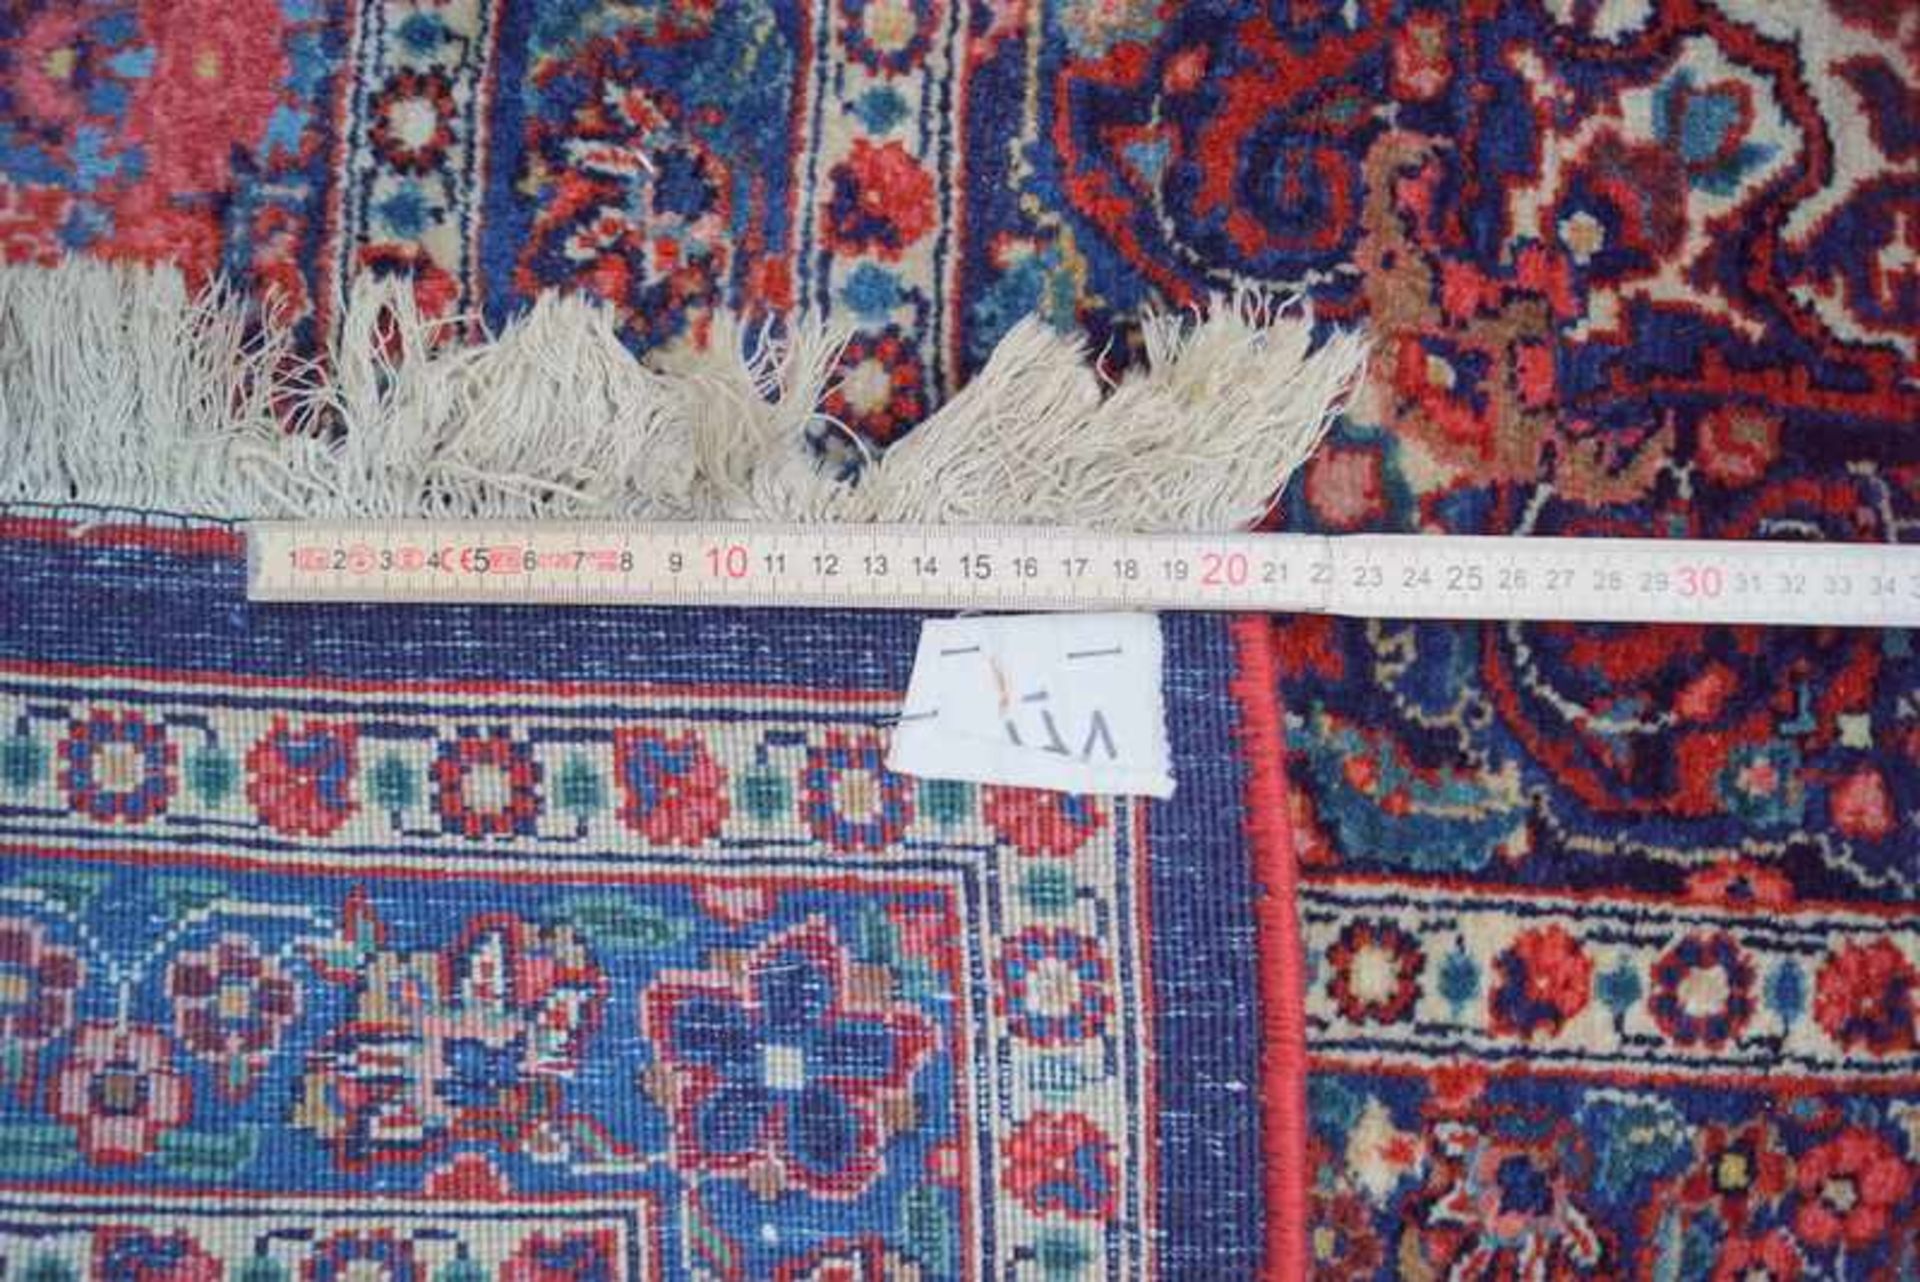 Großer persischer TeppichBaumwolle auf Wolle, Anilinfarben, sehr feine Knüpfung, gepflegt, ca. 370 x - Bild 2 aus 2